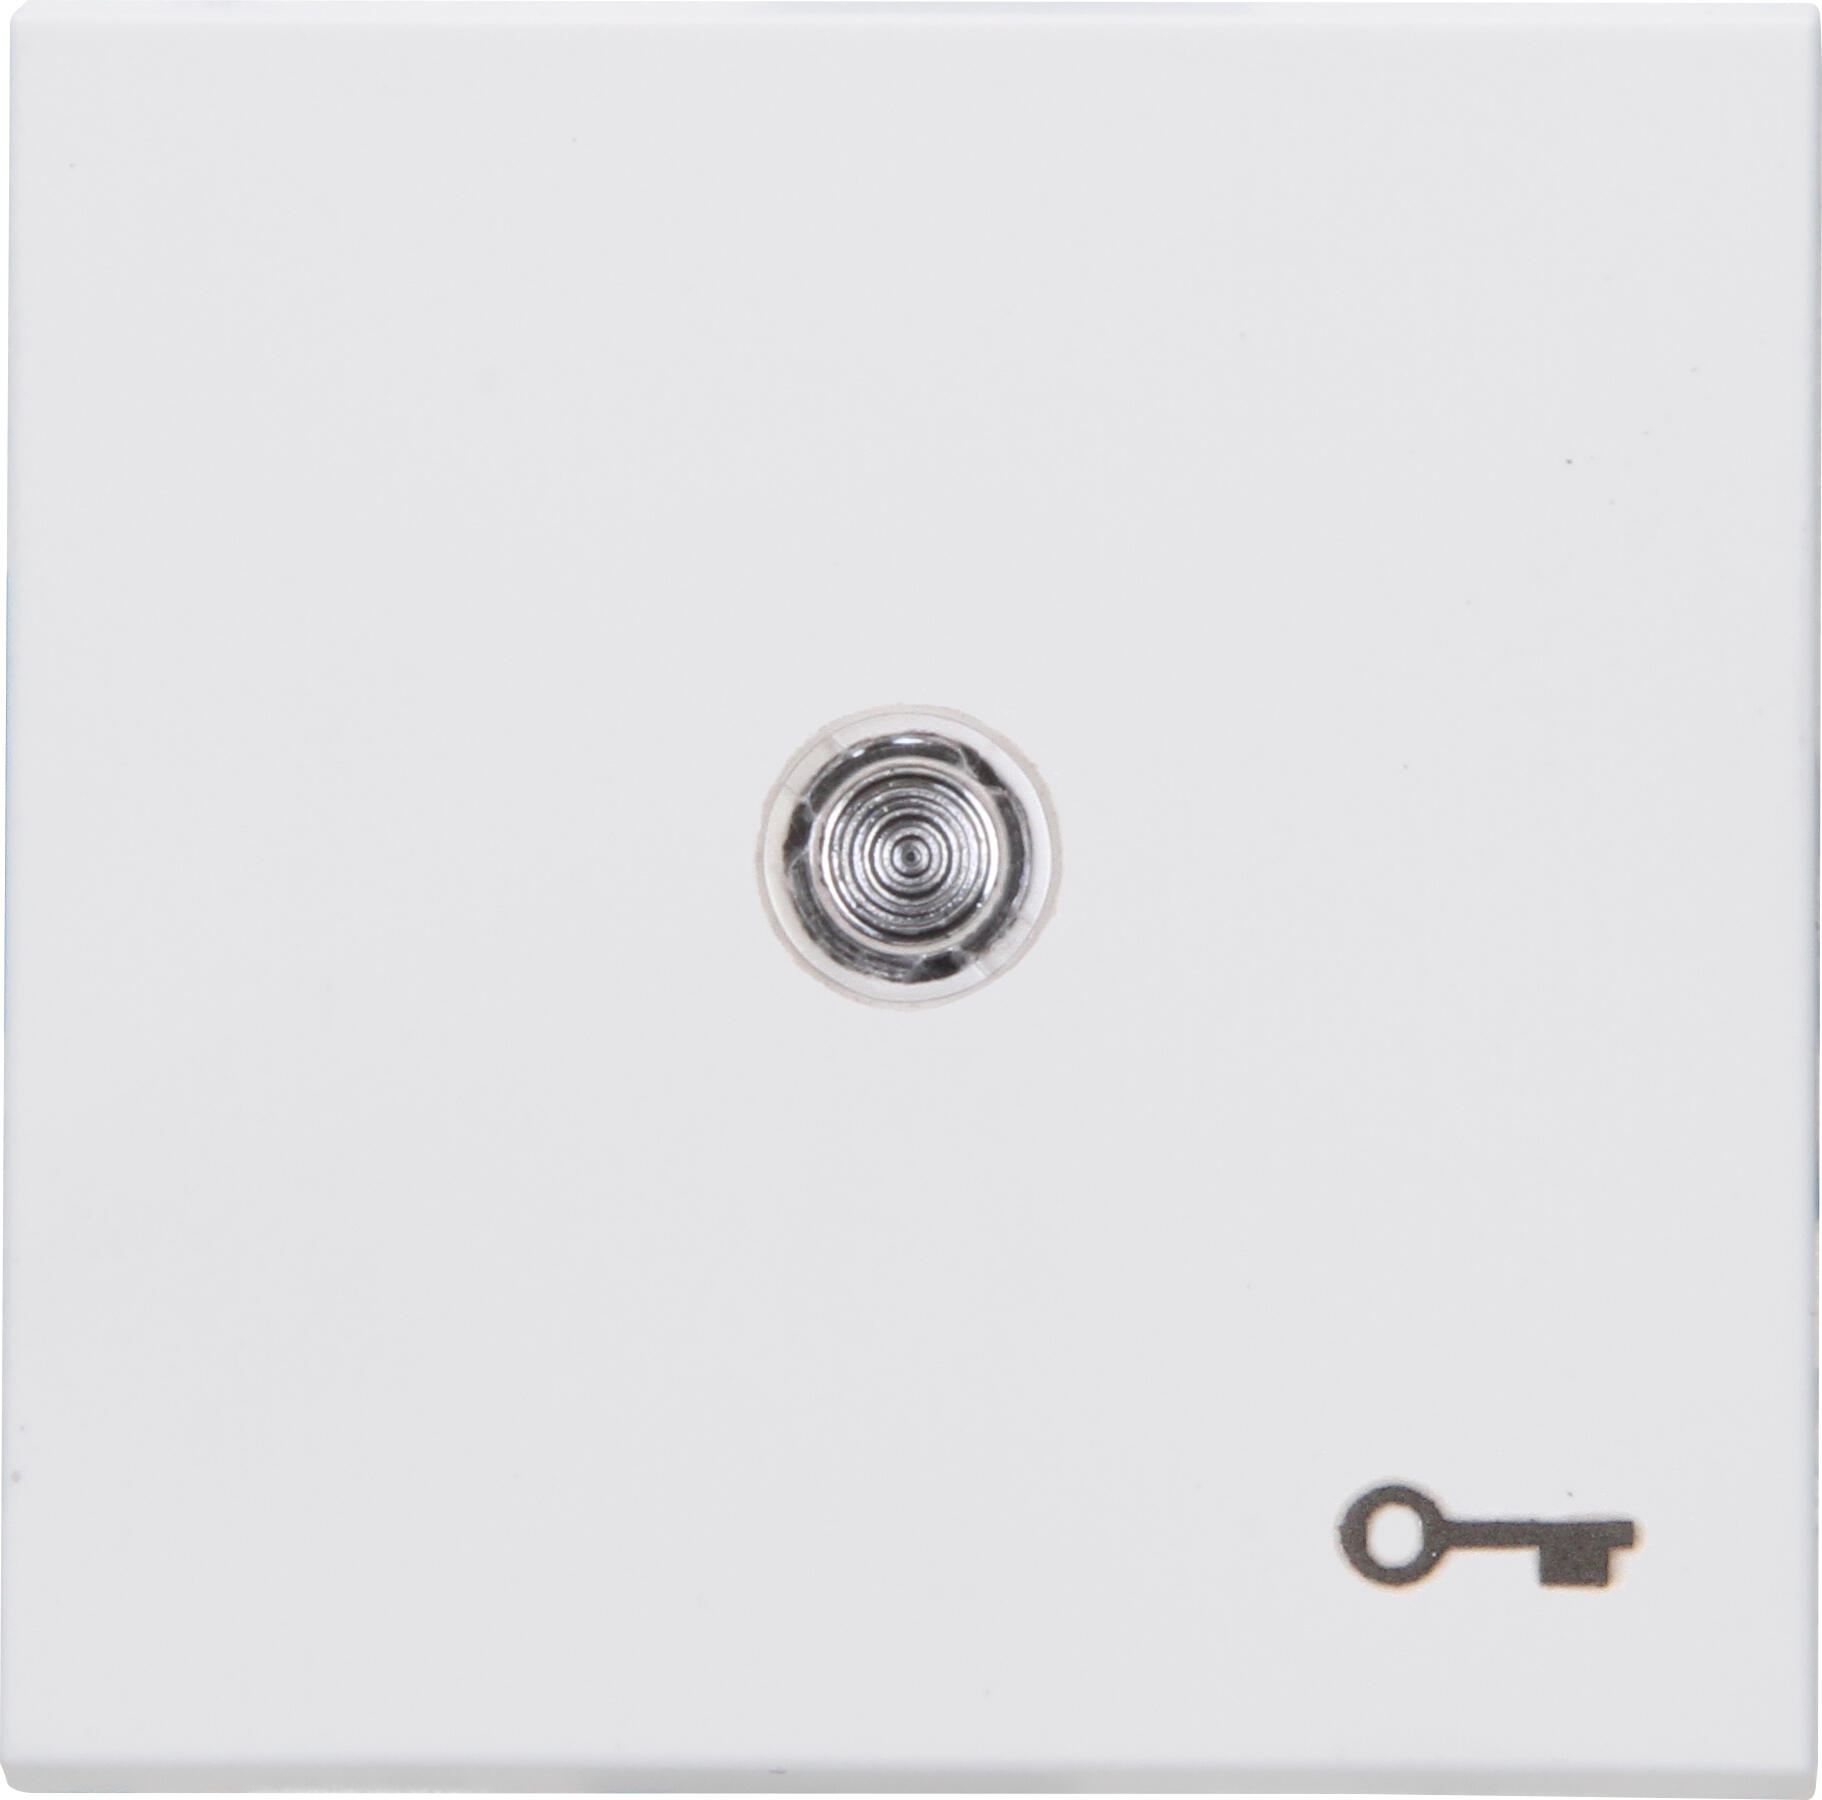 Kopp 490464003 HK07 - Flächenwippe mit Linse und Symbol "Schlüssel", Farbe: arktisweiß matt